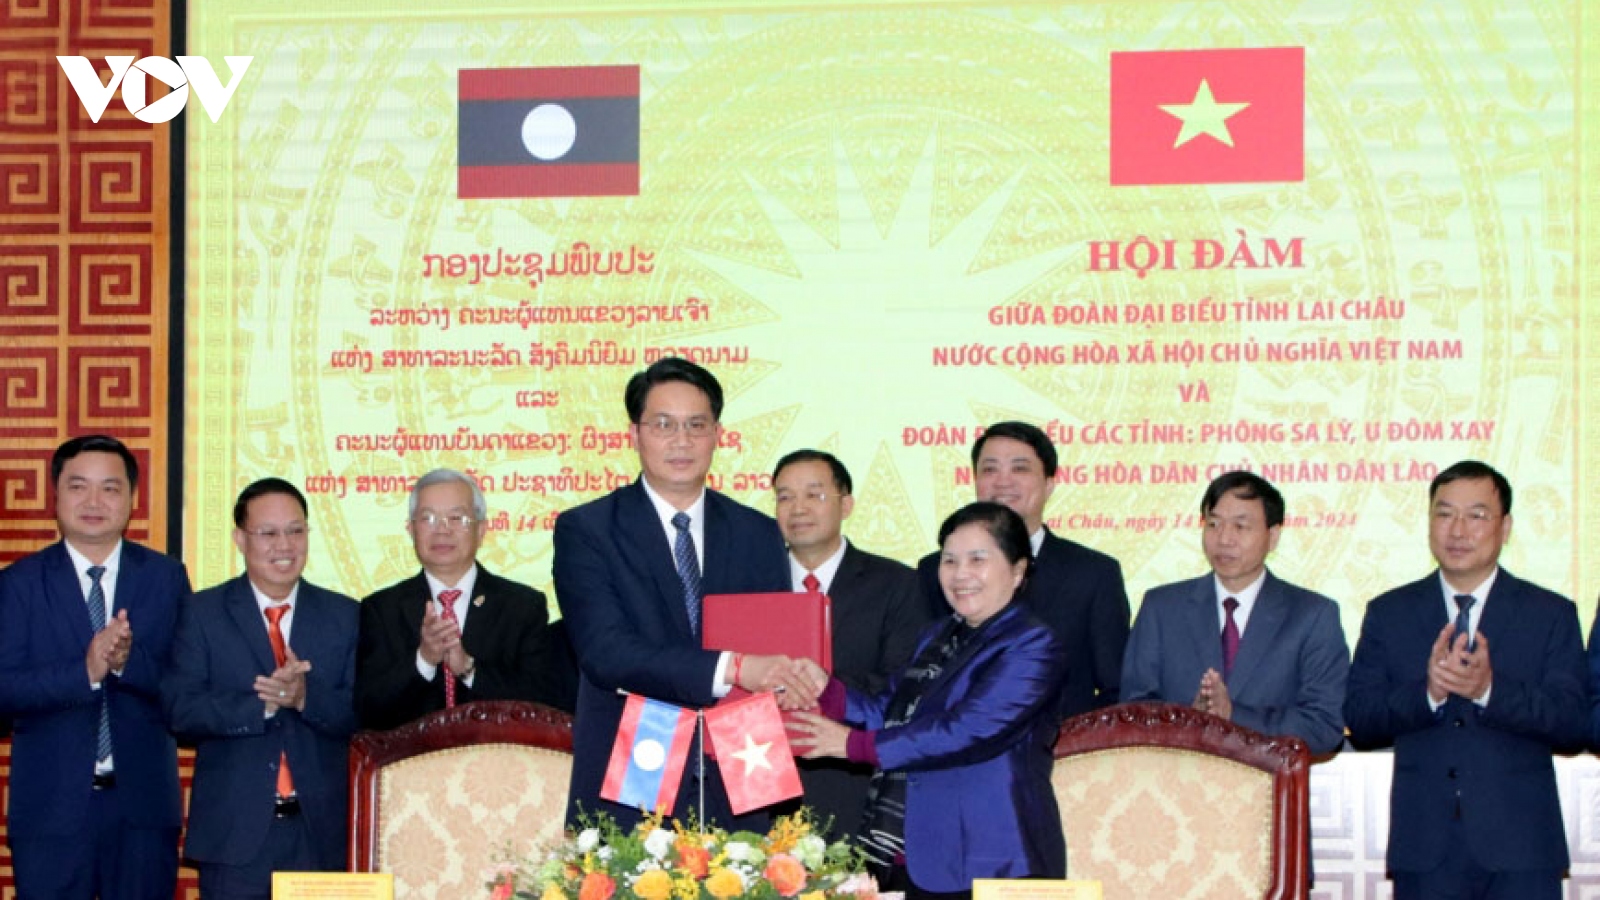 Thắt chặt mối quan hệ giữa các địa phương, vun đắp tình đoàn kết Việt - Lào